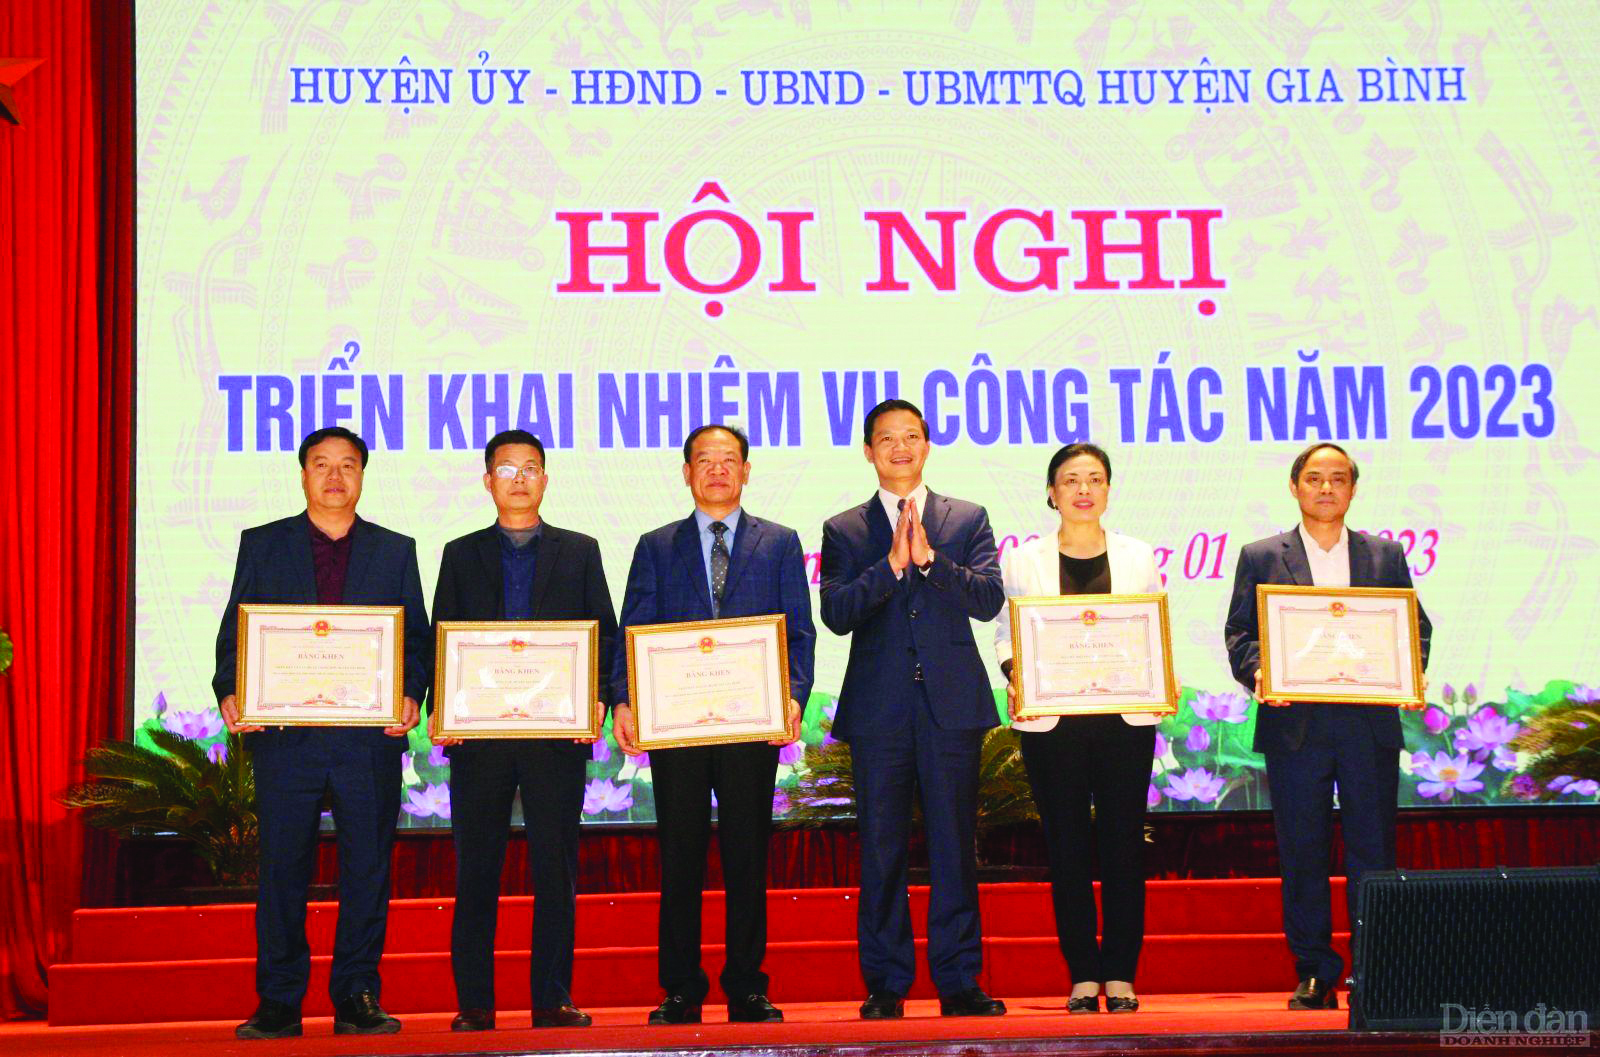  Lãnh đạo tỉnh Bắc Ninh tặng Bằng khen cho Đảng bộ, chính quyền và nhân dân huyện Gia Bình đạt kết quả công tác năm 2022